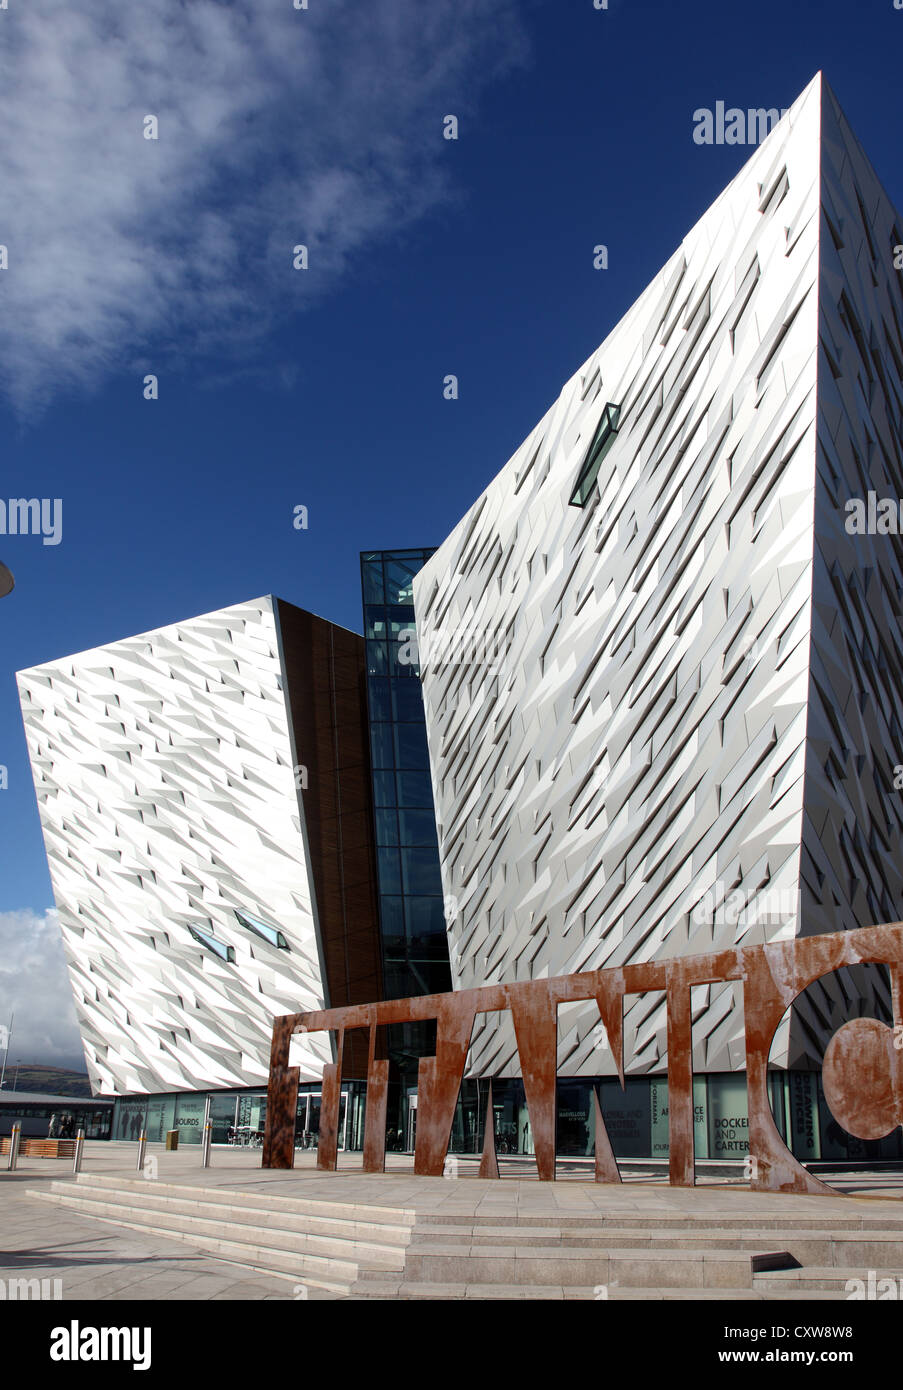 Centre des visiteurs, Titanic Titanic Quarter, Belfast, en Irlande du Nord Banque D'Images